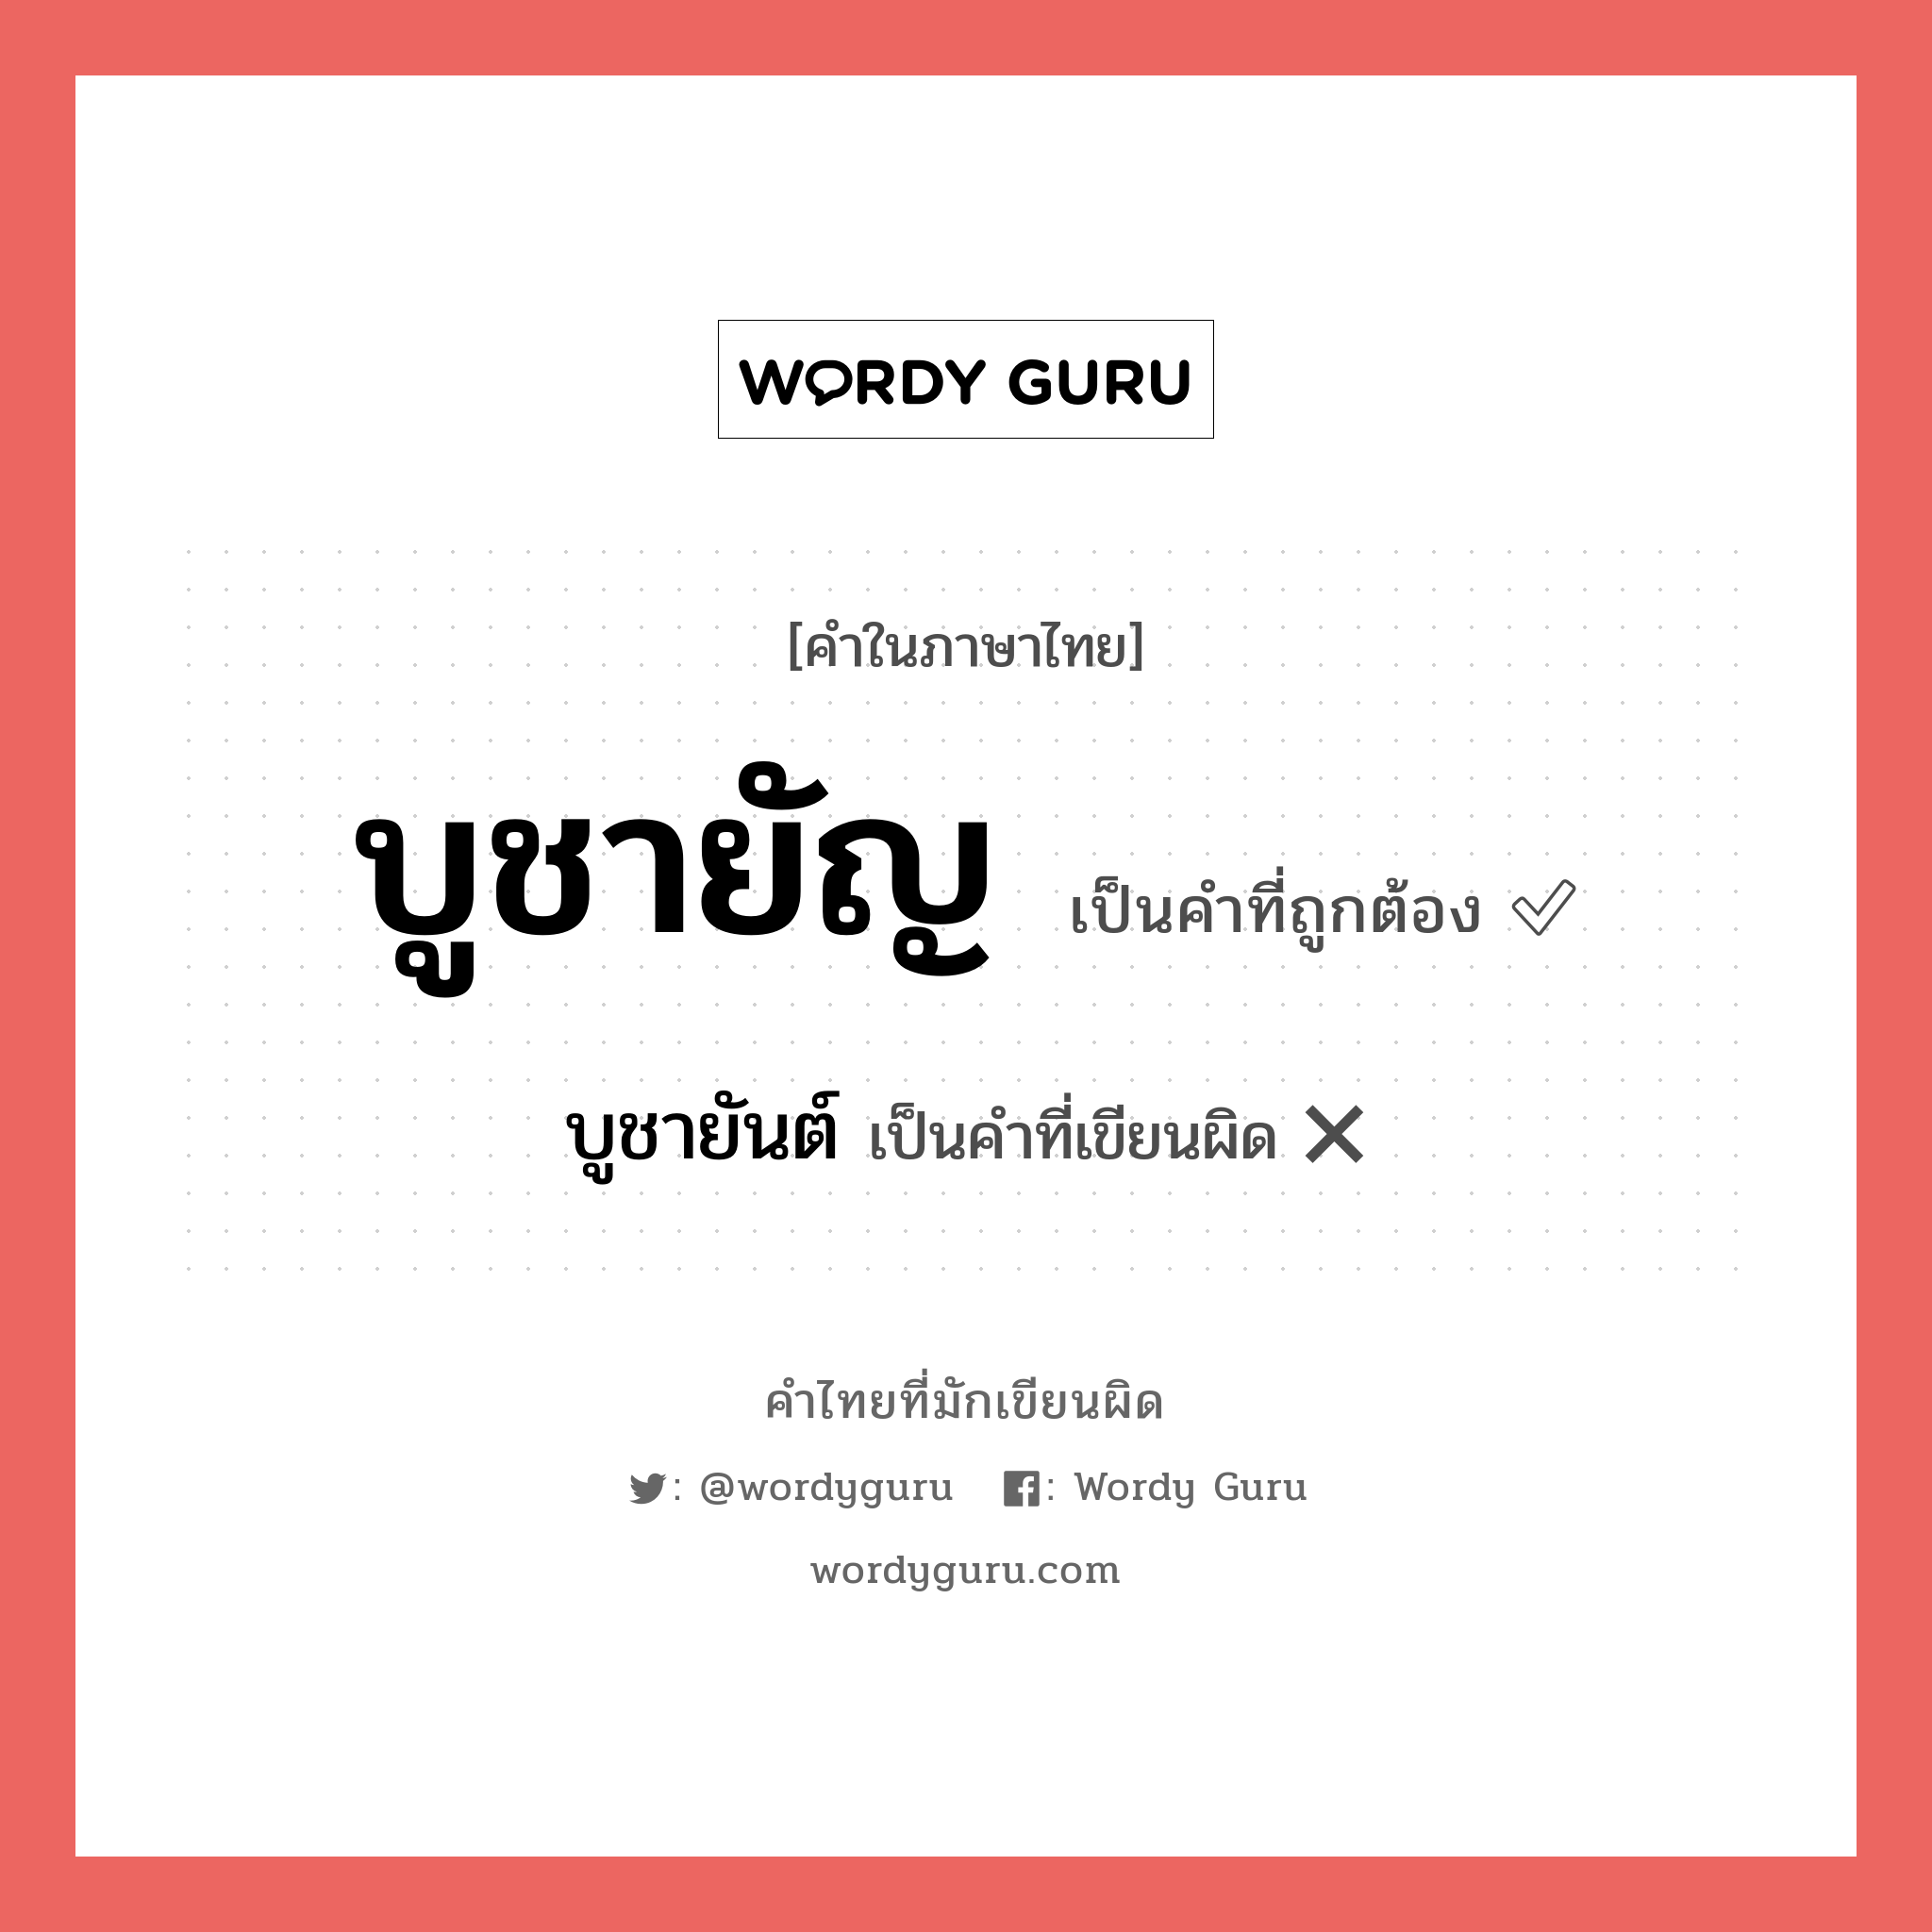 บูชายันต์ หรือ บูชายัญ คำไหนเขียนถูก?, คำในภาษาไทยที่มักเขียนผิด บูชายันต์ คำที่ผิด ❌ บูชายัญ